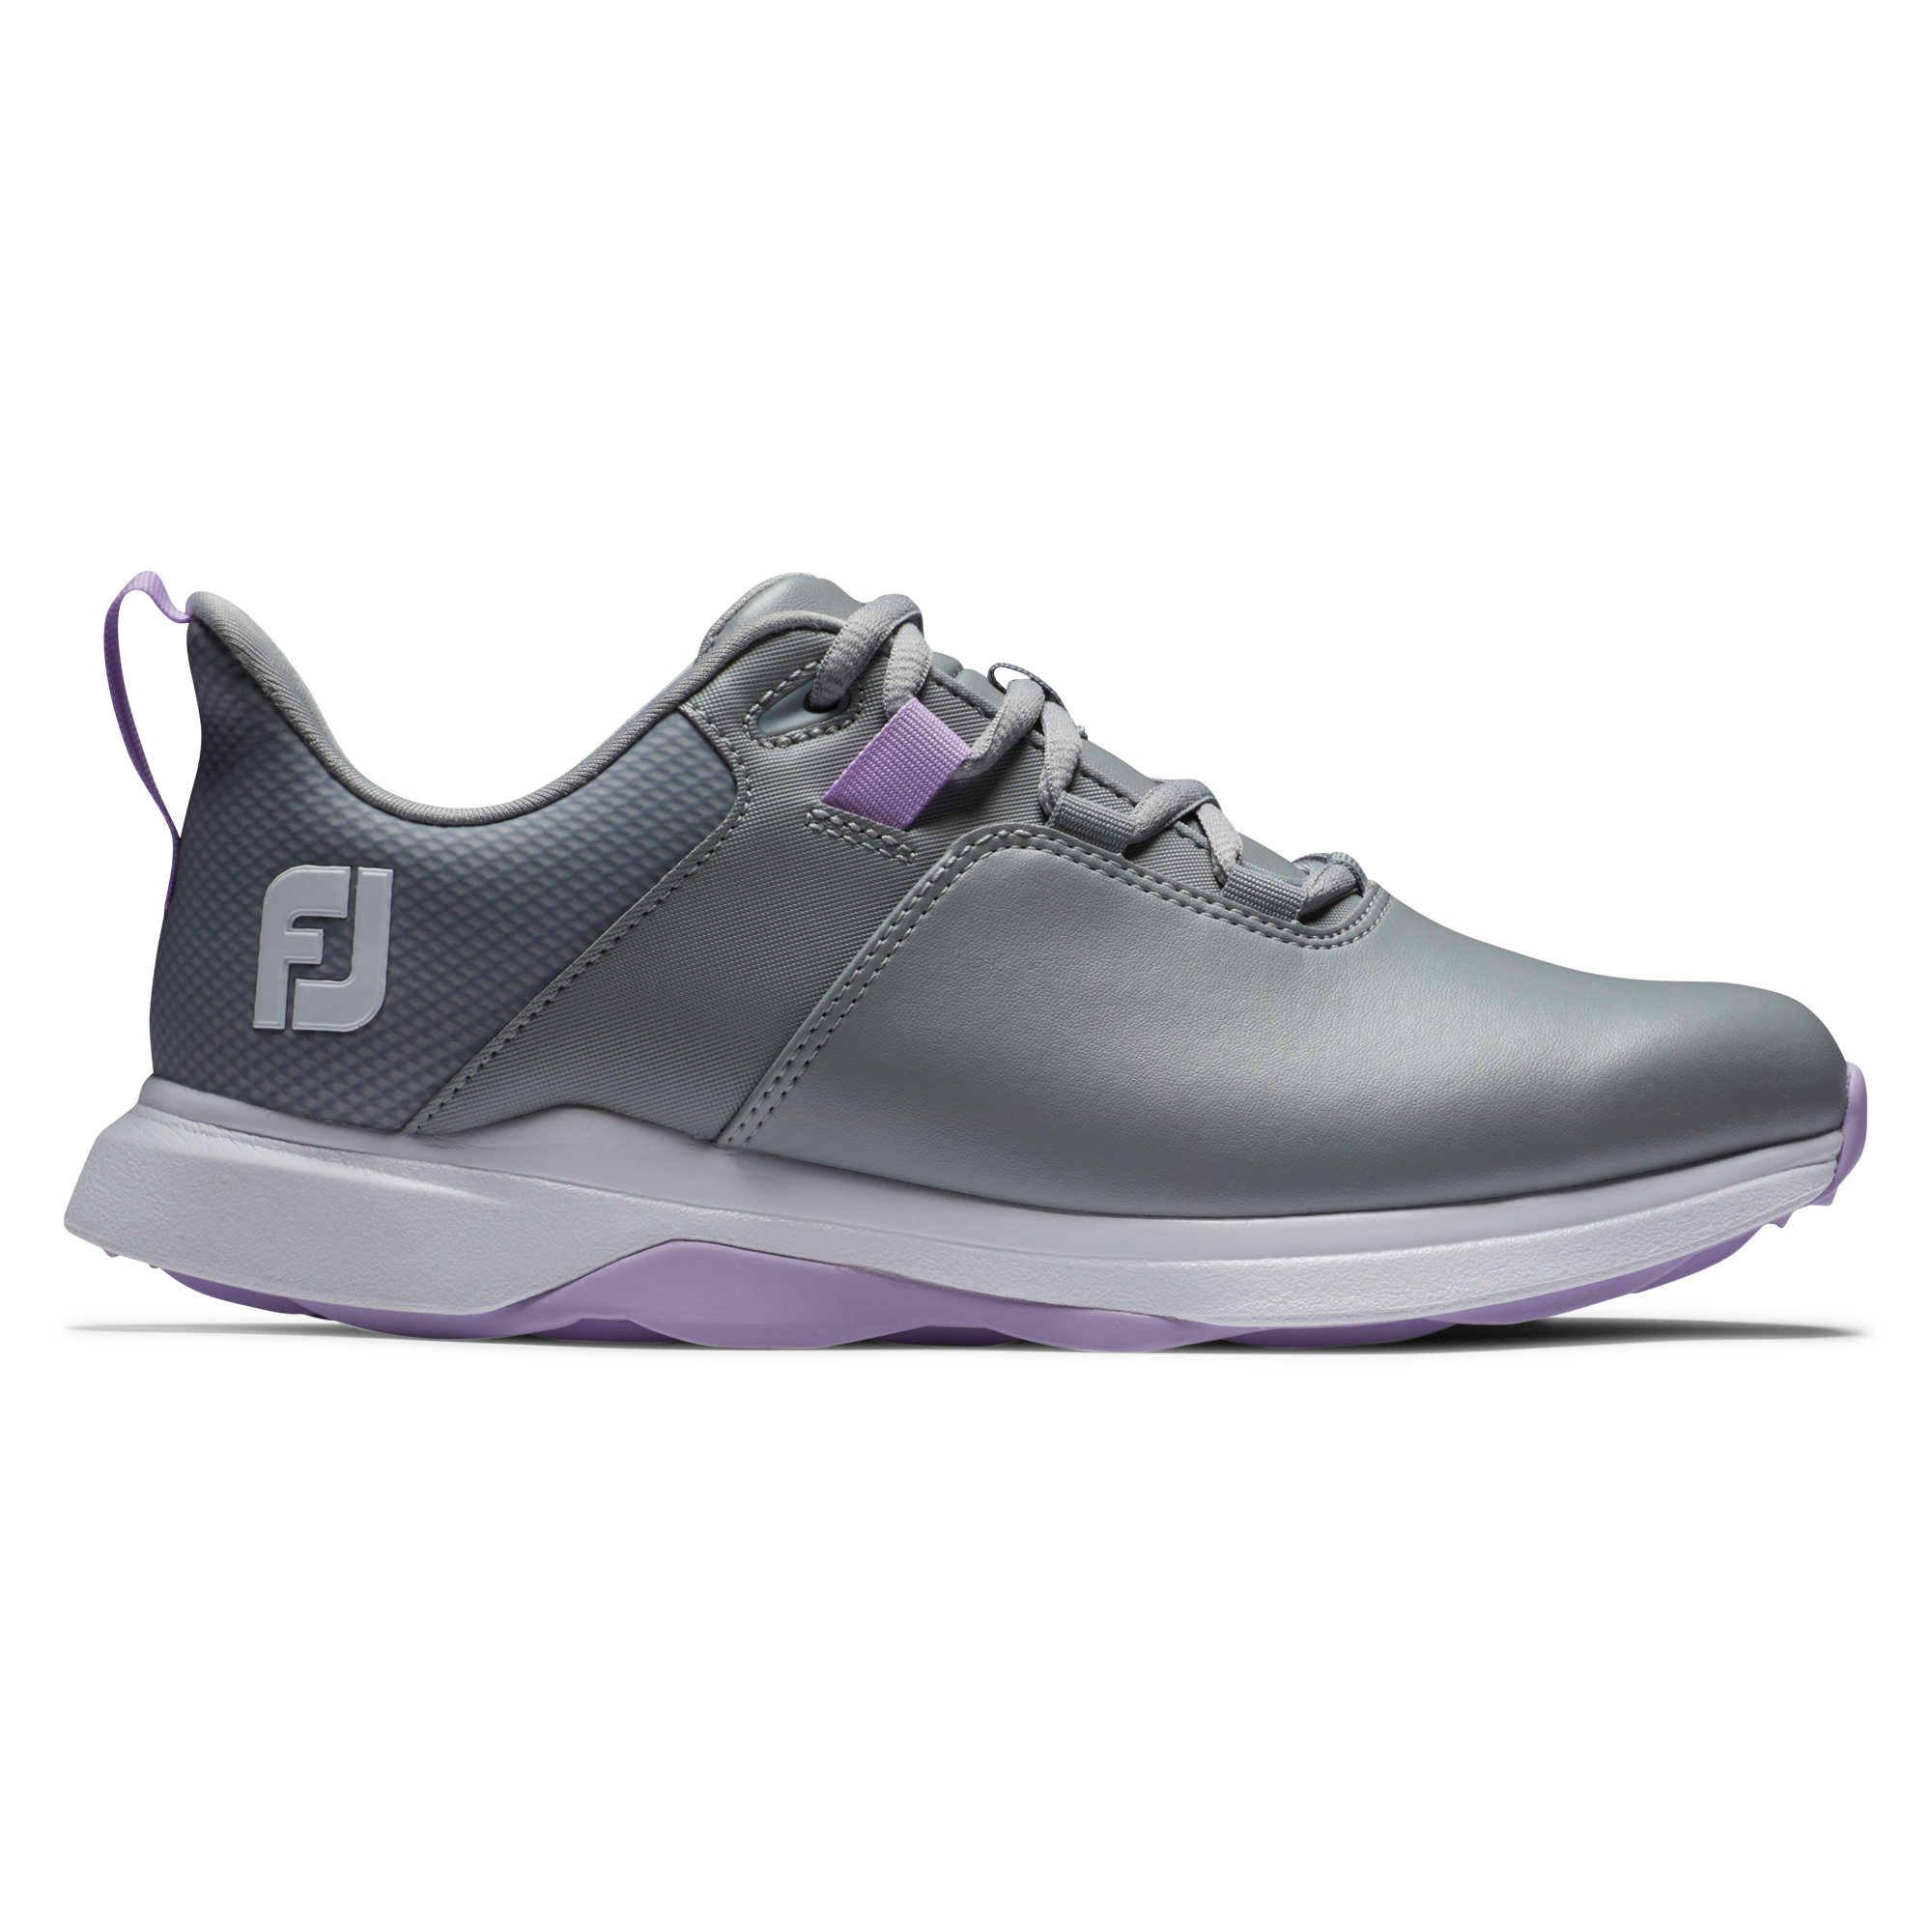 FootJoy ProLite dámské golfové boty, šedé, vel. 5,5 UK